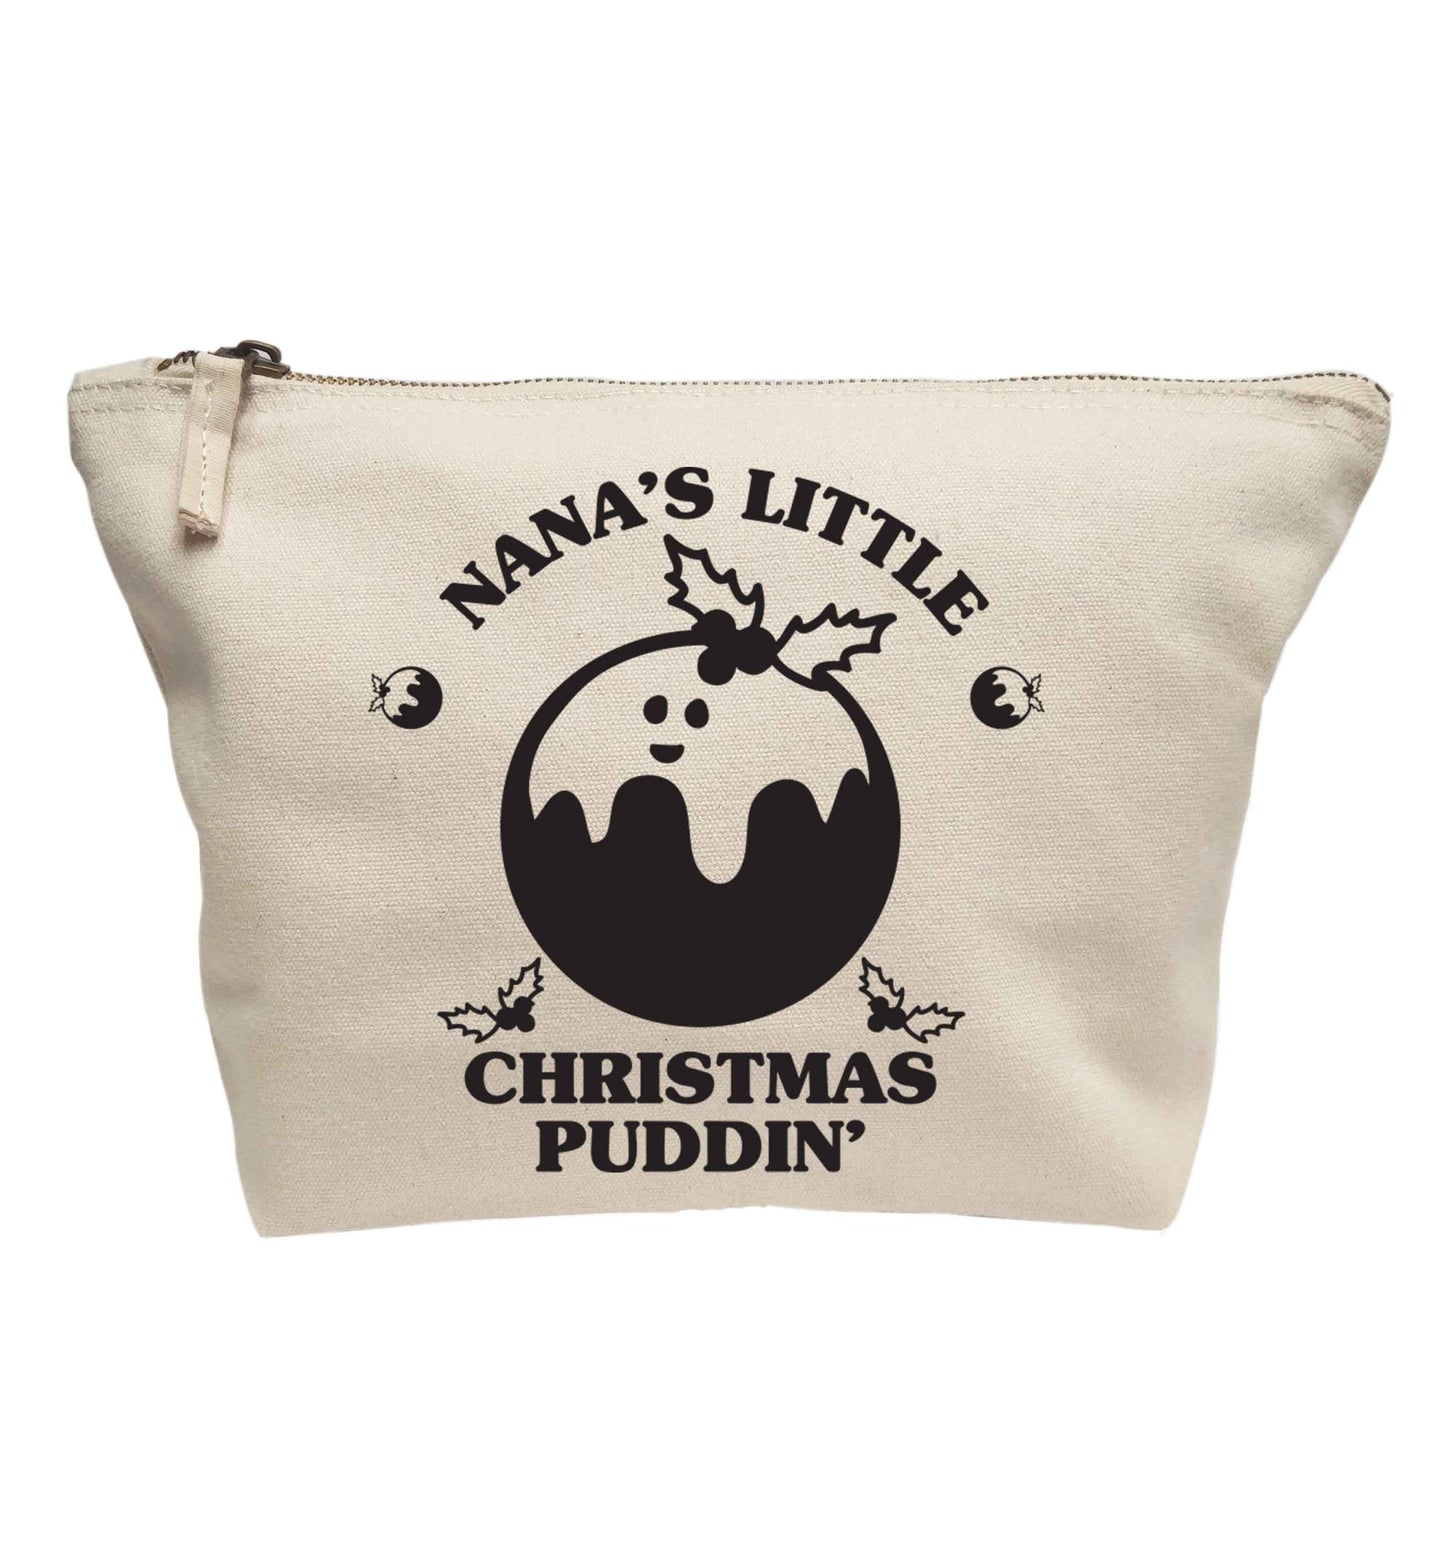 Nana's little Christmas puddin' | makeup / wash bag